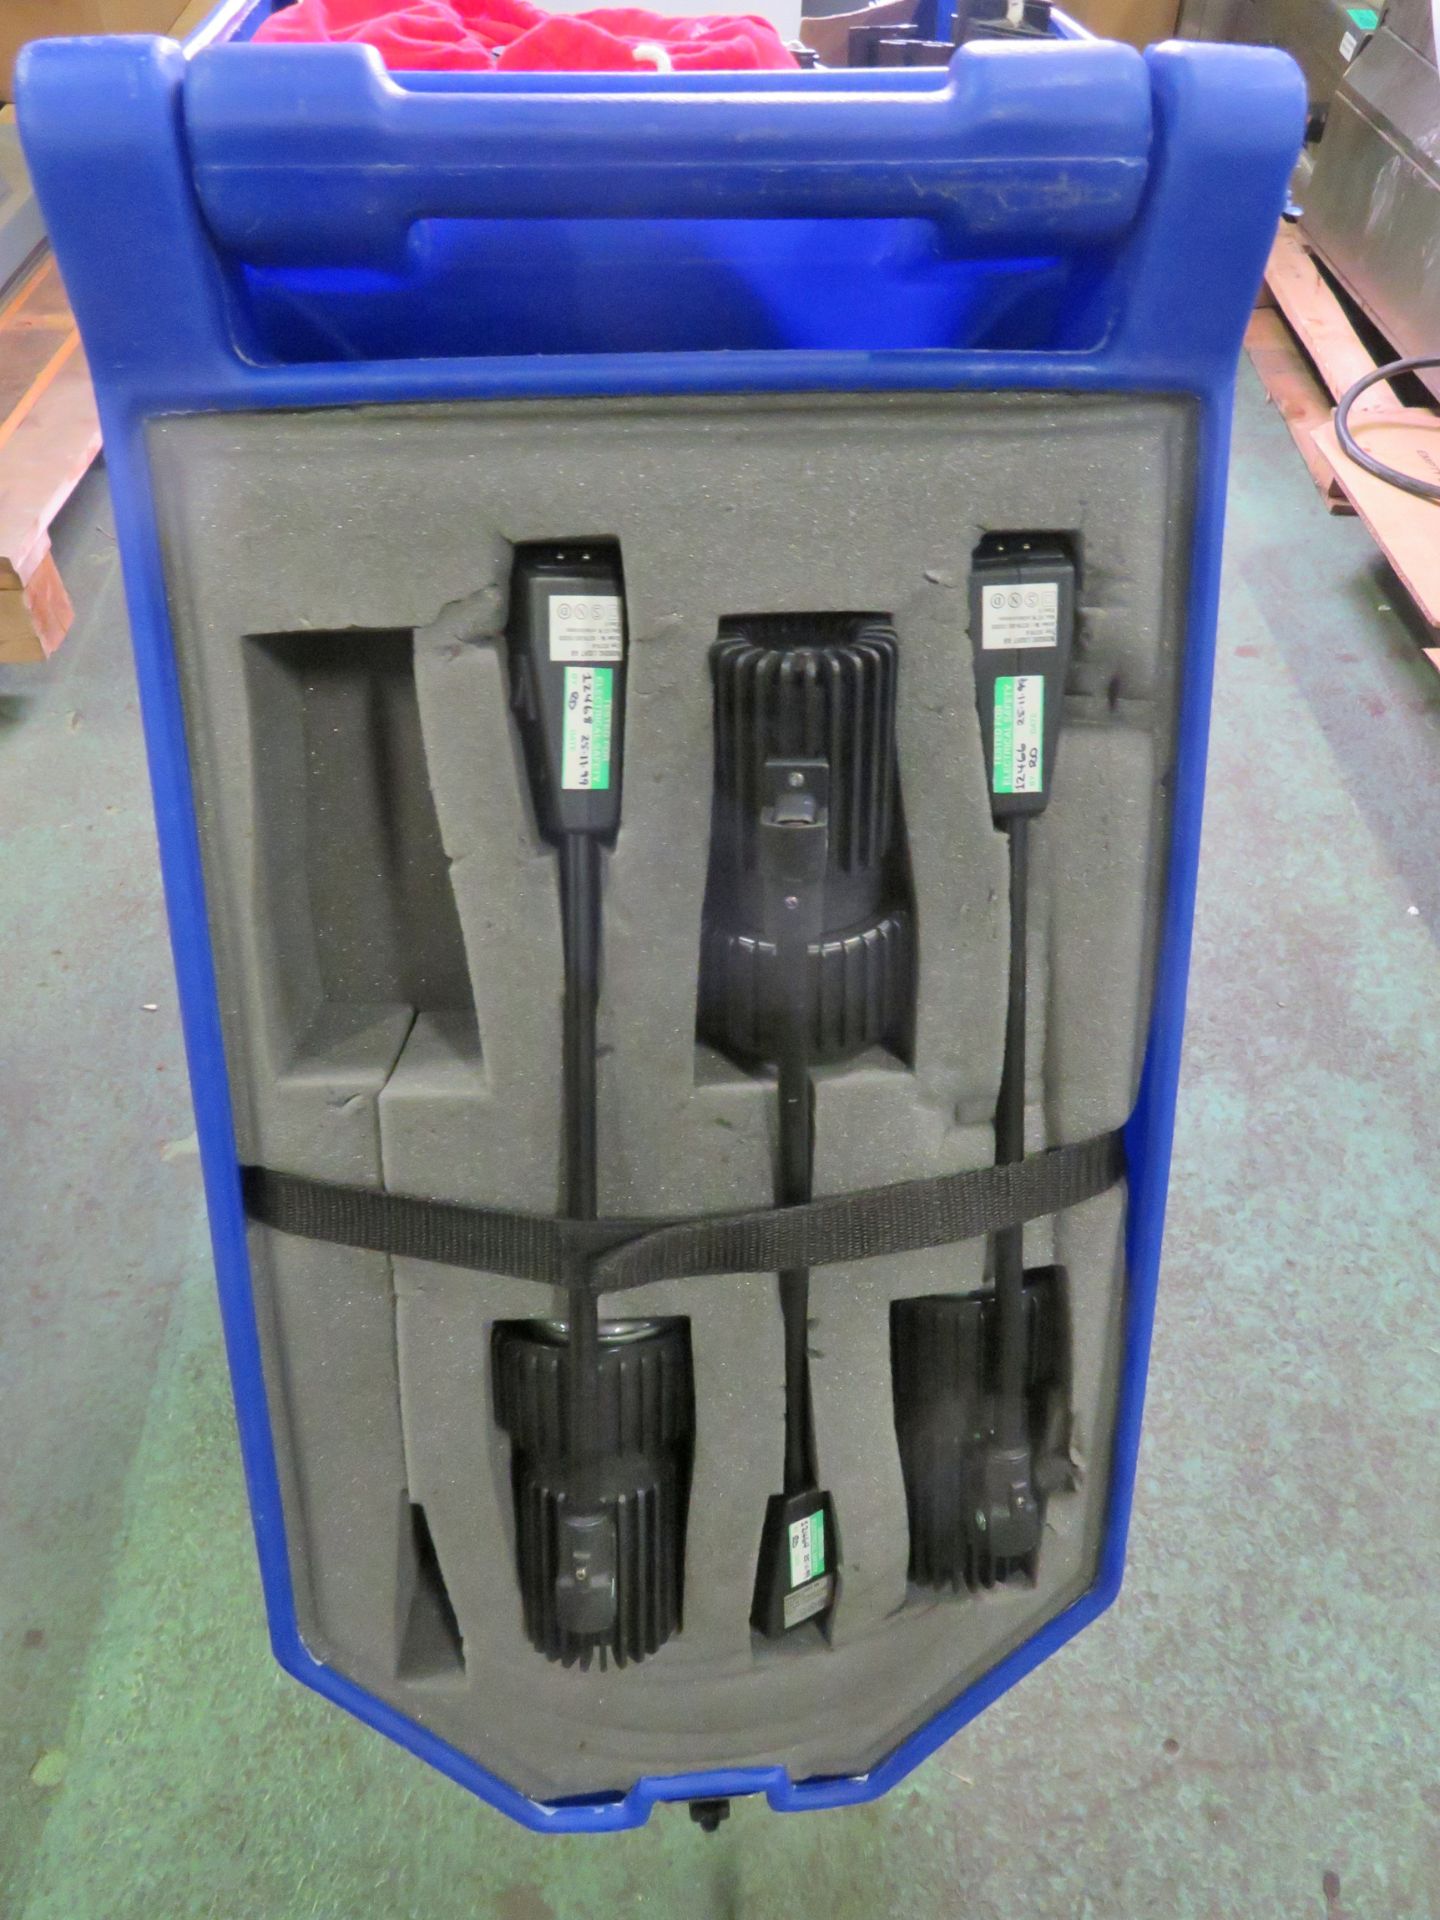 Pop up stand kit with case L 286 x W 52 x H 240cm - Image 5 of 5